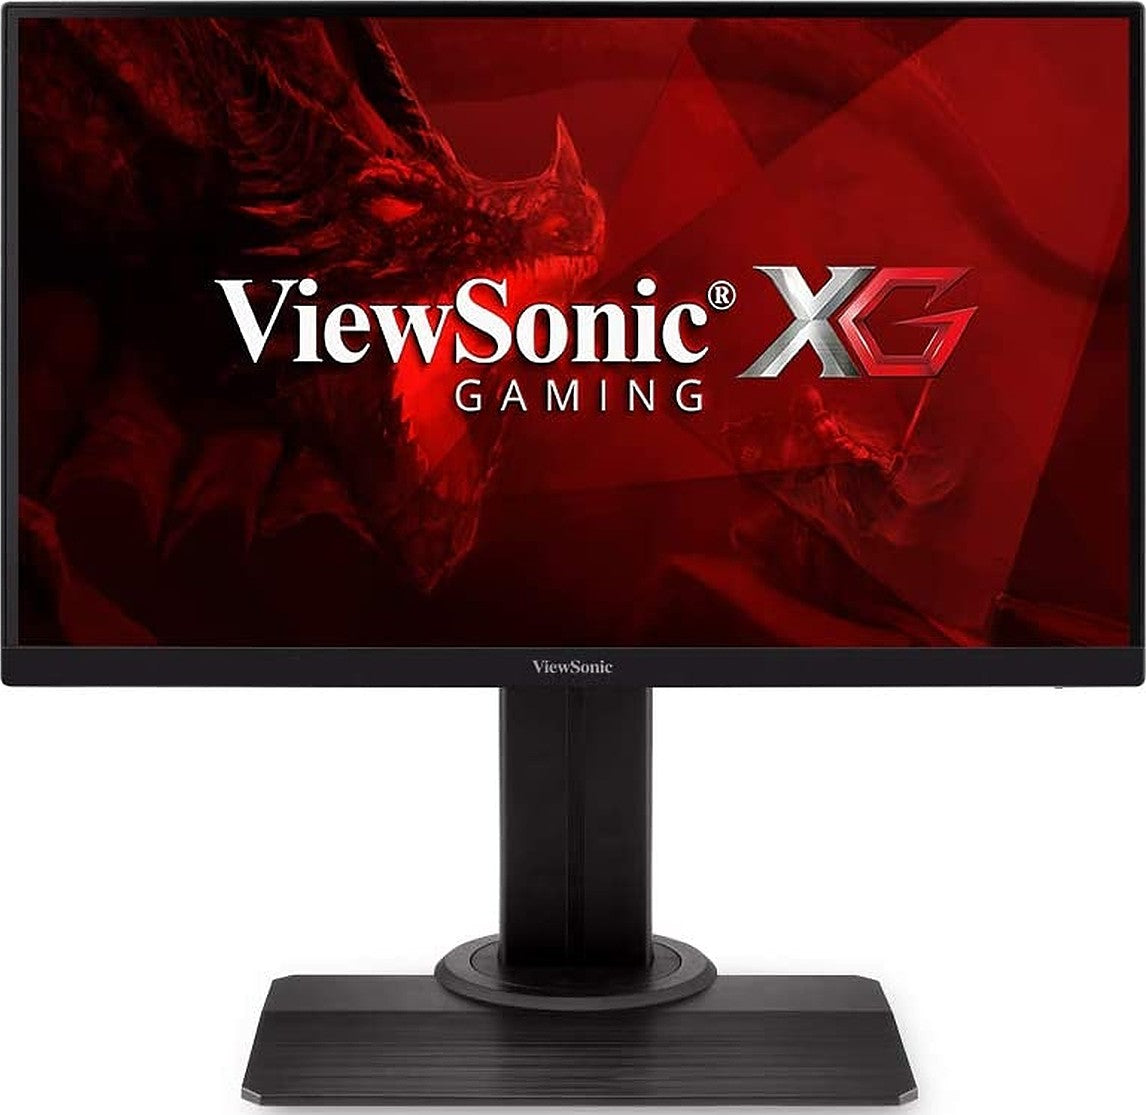 ViewSonic 24-inch Full HD IPS Gaming Monitor